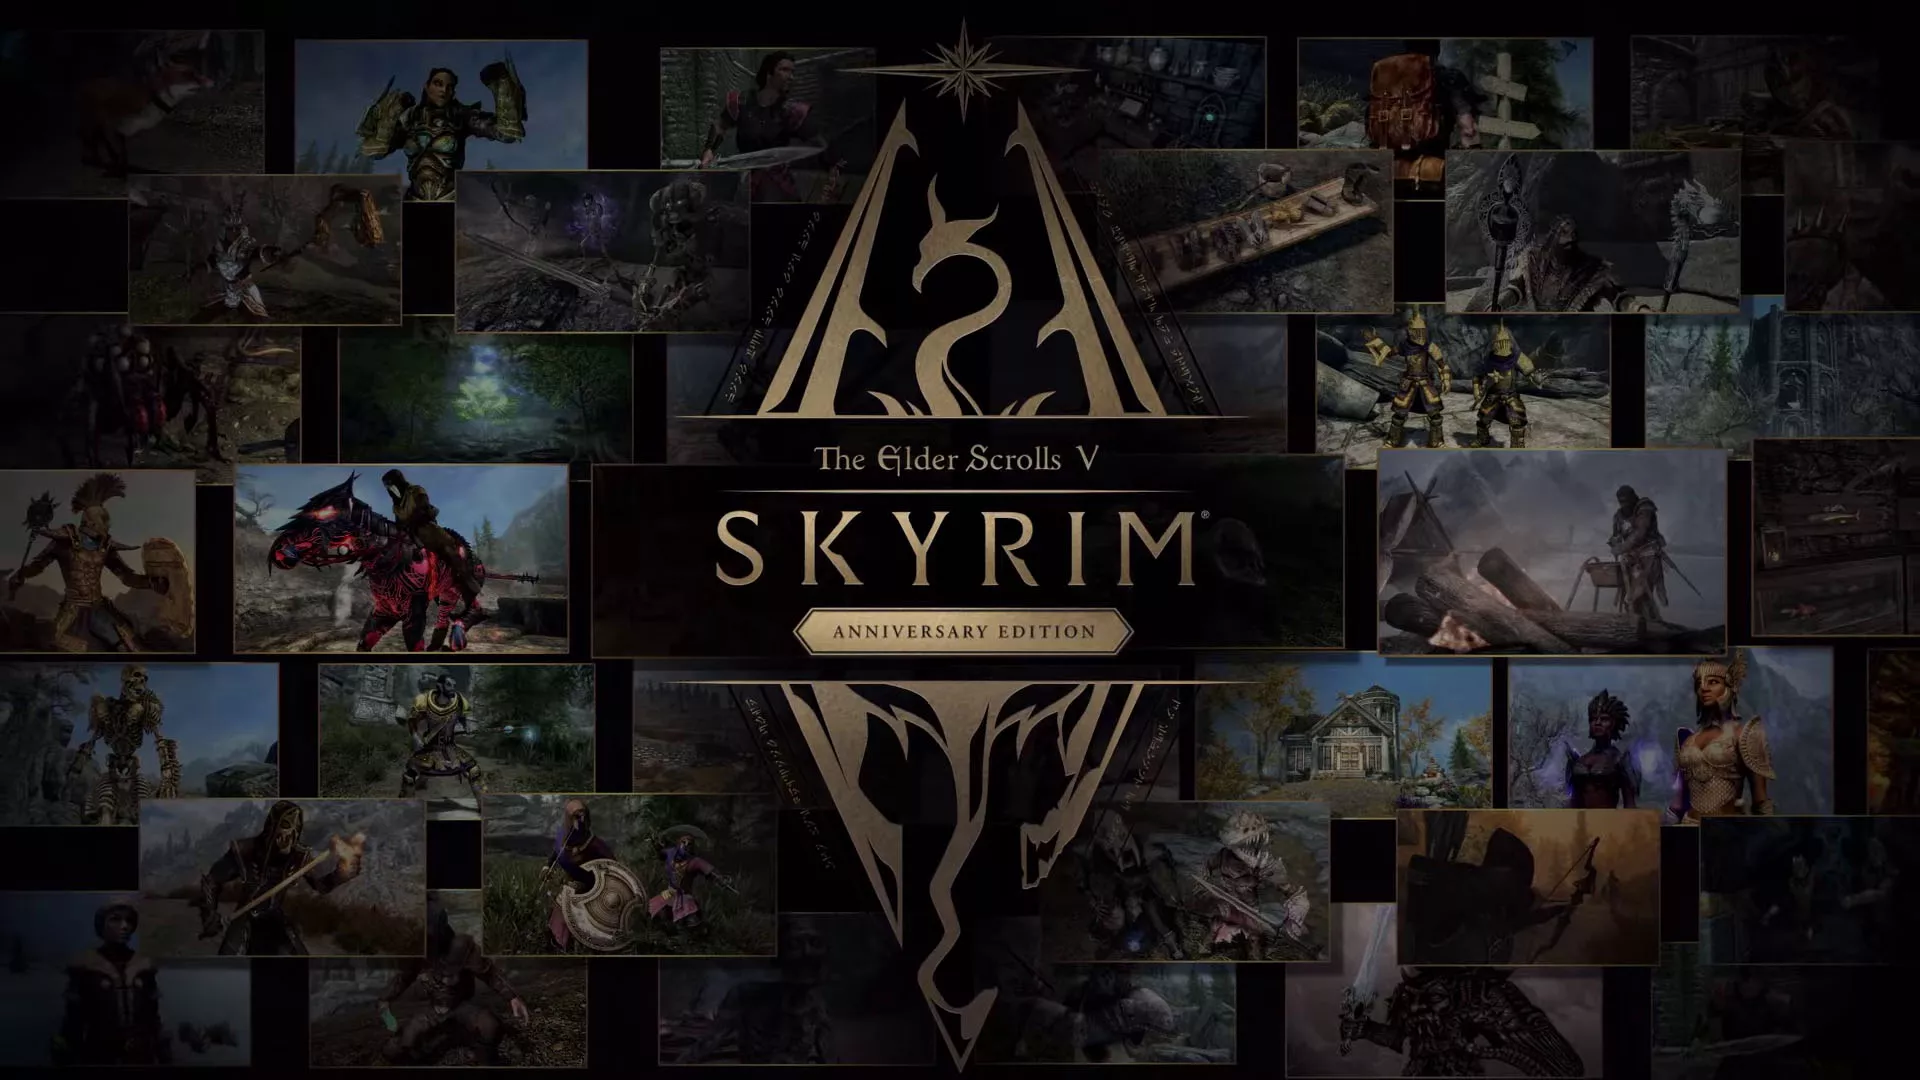 The Elder Scrolls V: Skyrim Anniversary Edition - Preis und kostenloses Upgrade bekannt gegeben Heropic